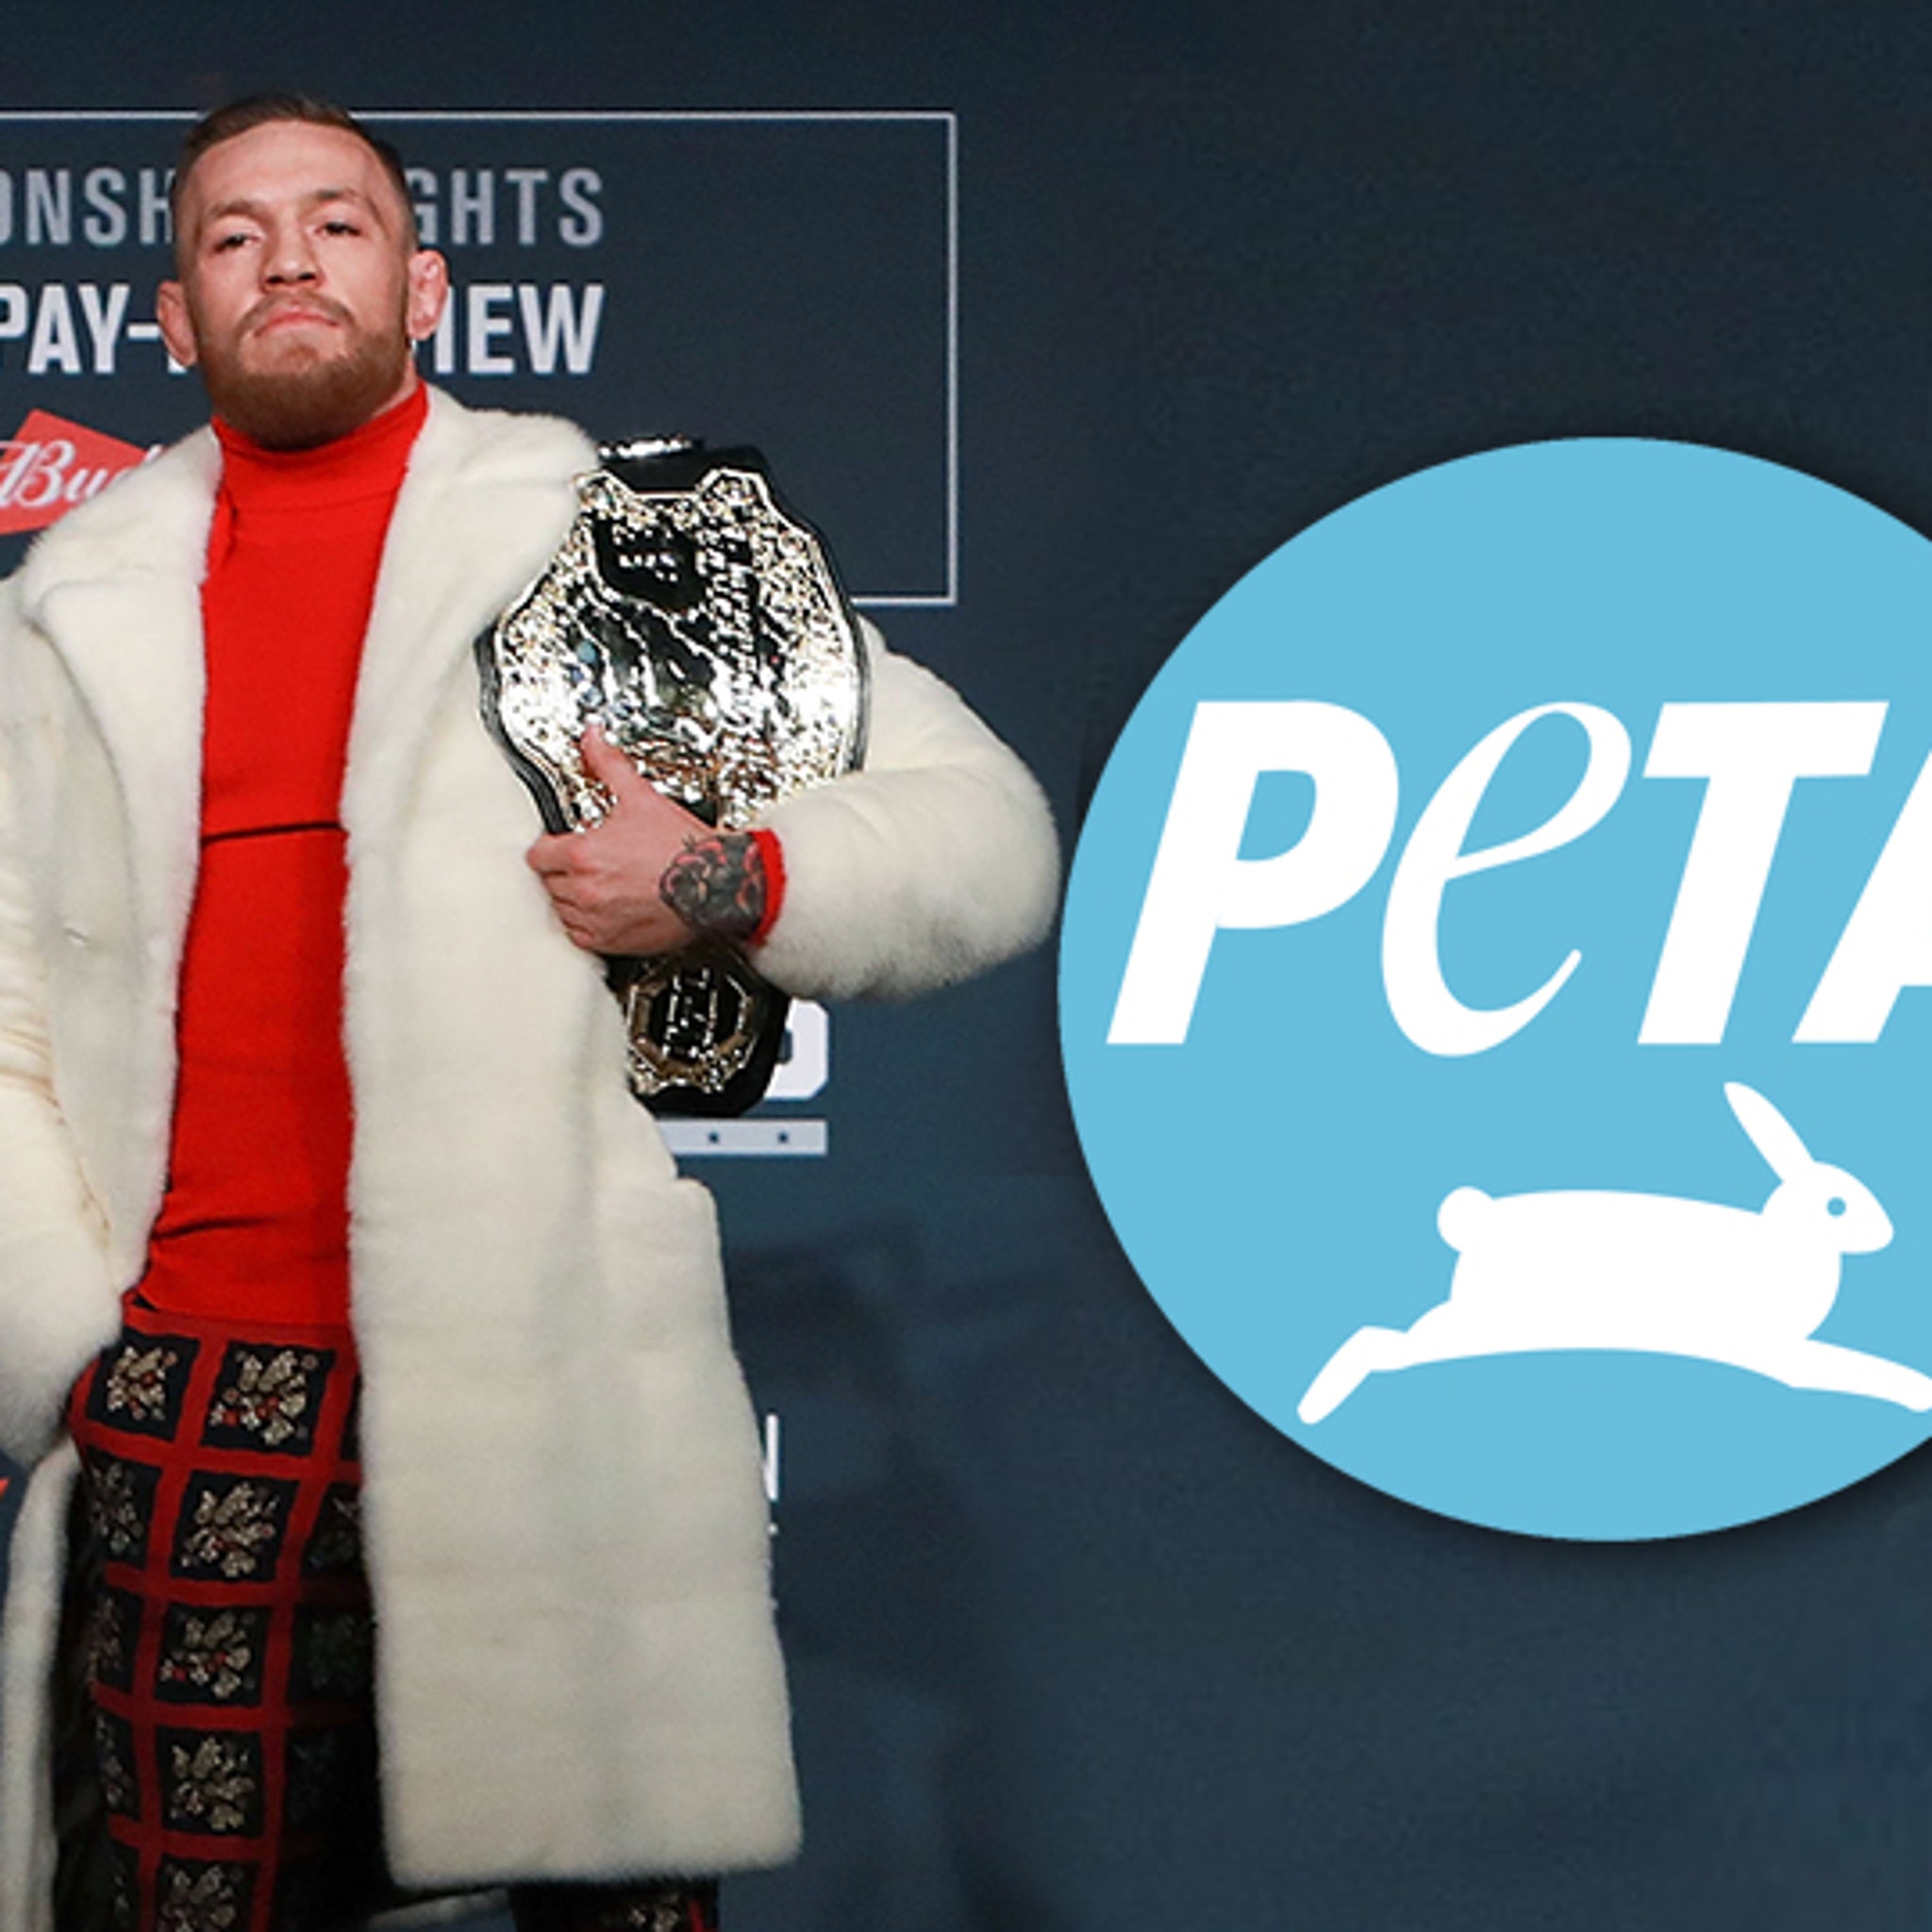 Hjælp Beskrive bøf PETA's Pissed At Conor McGregor